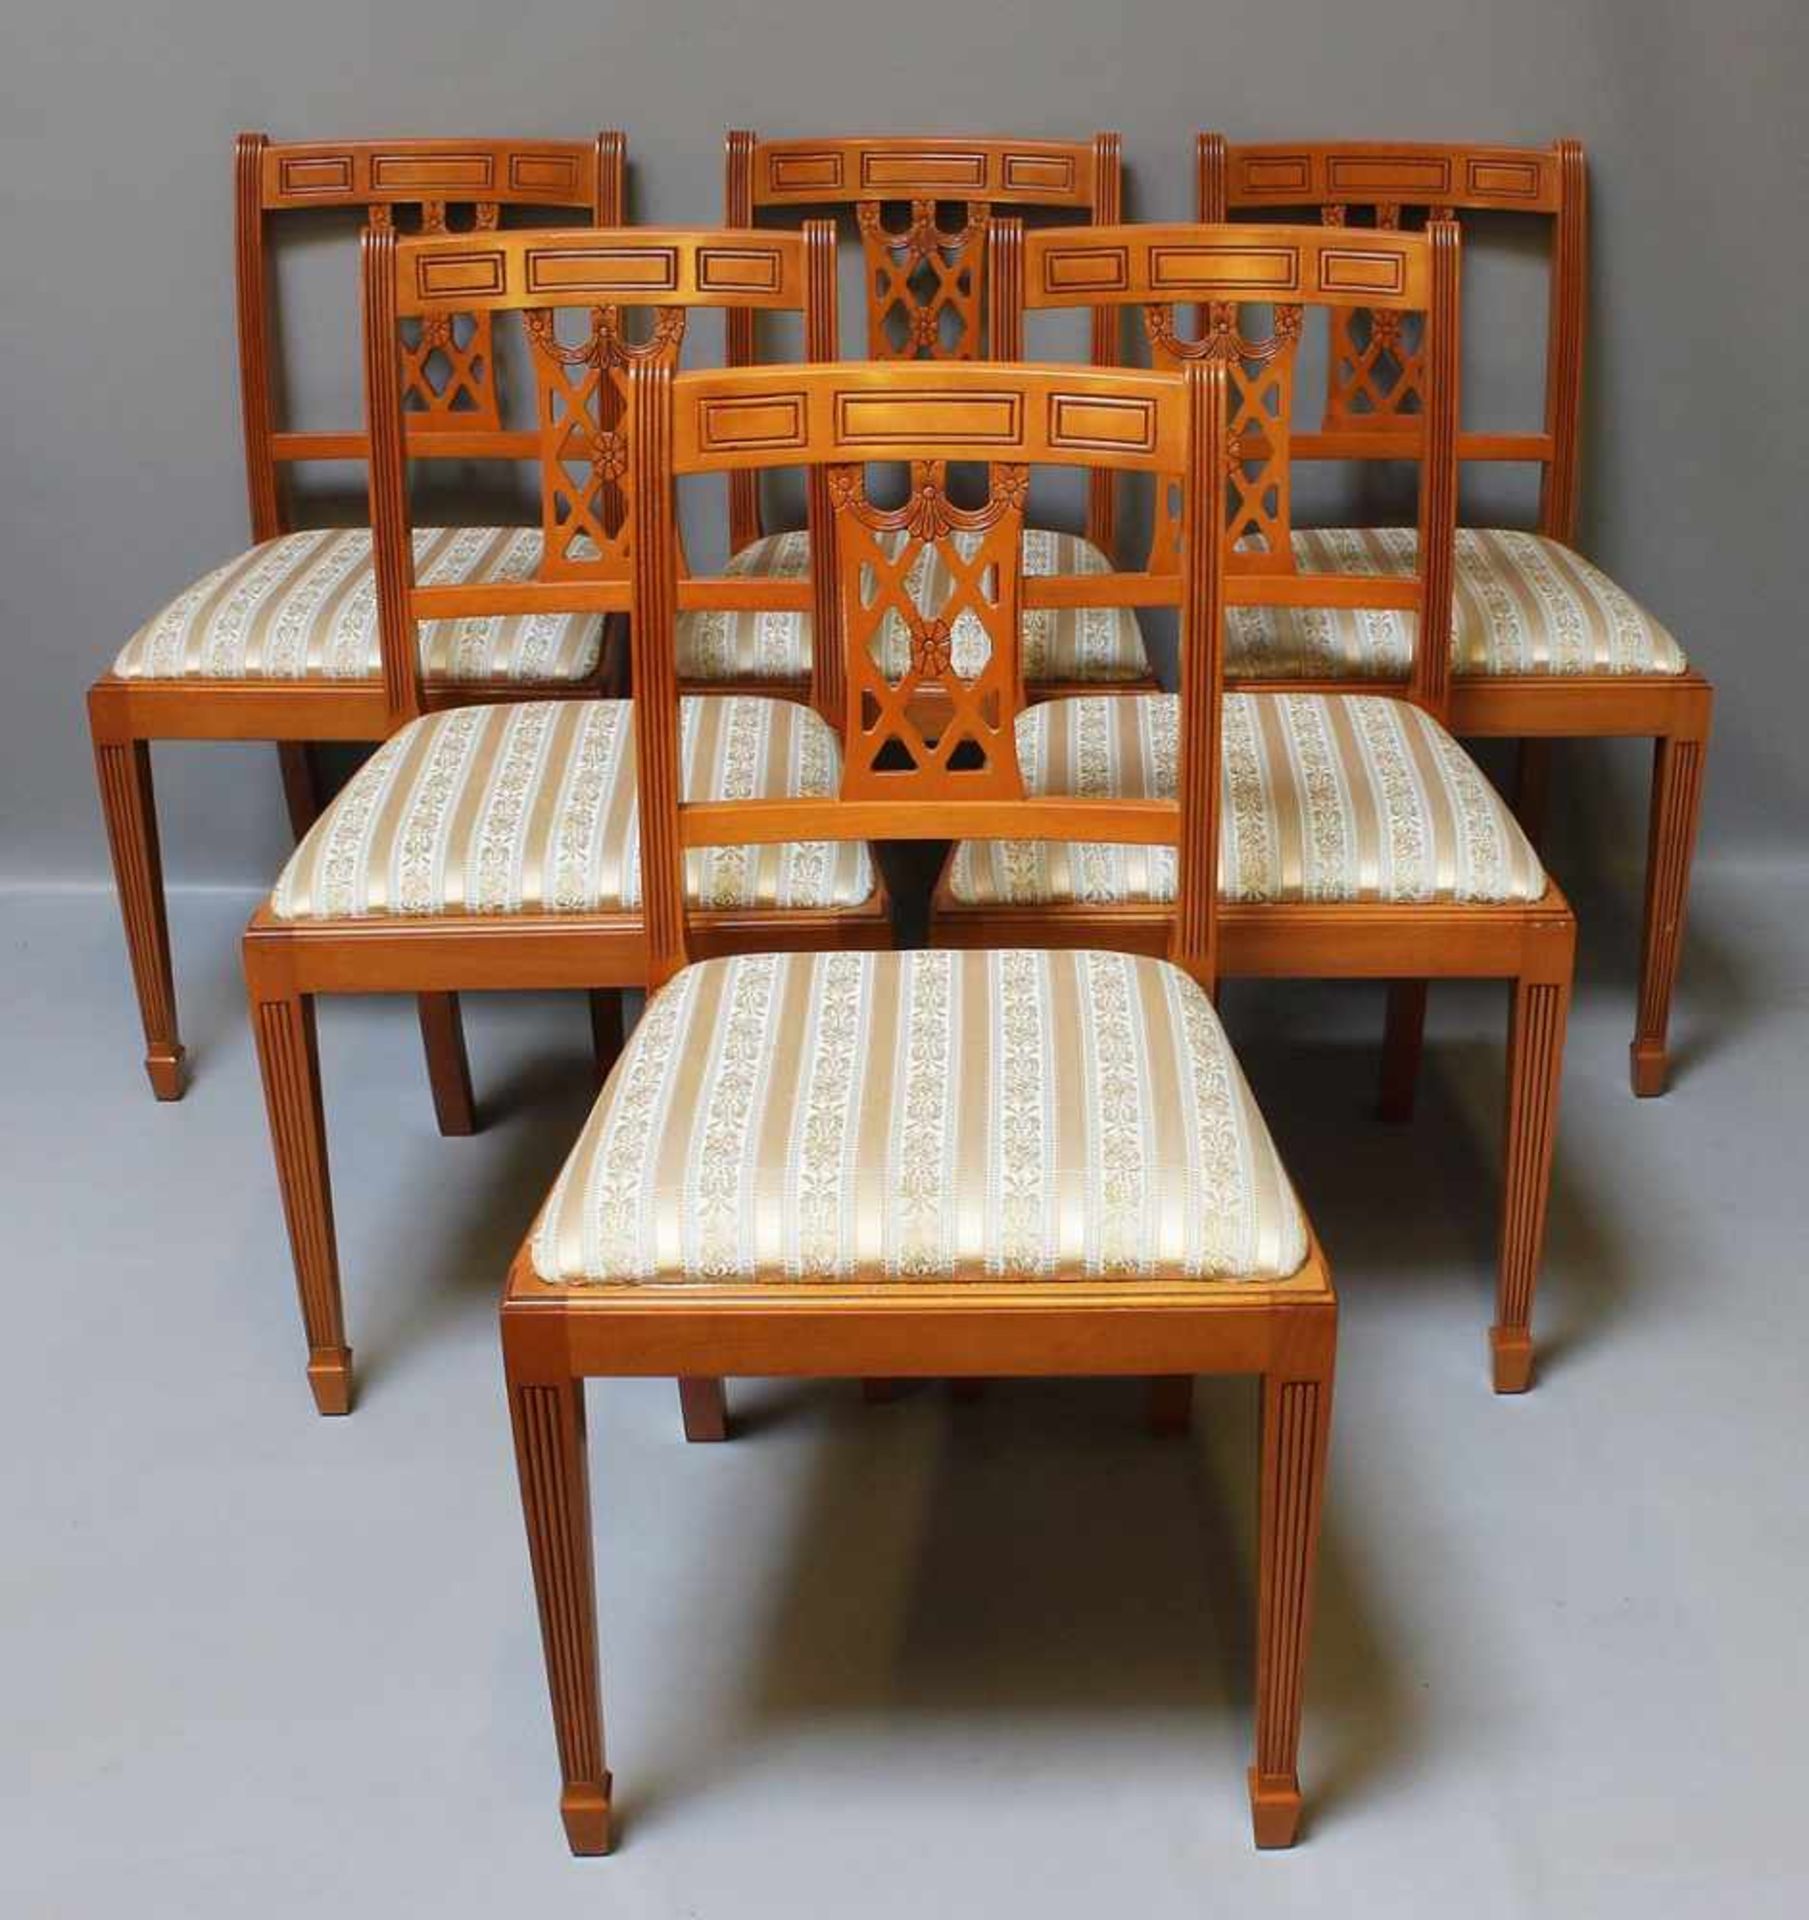 Esstisch mit 8 Stühlen.Eibe. Kannelierte, konische Beine, Sitzflächen der Stühle (2x mit